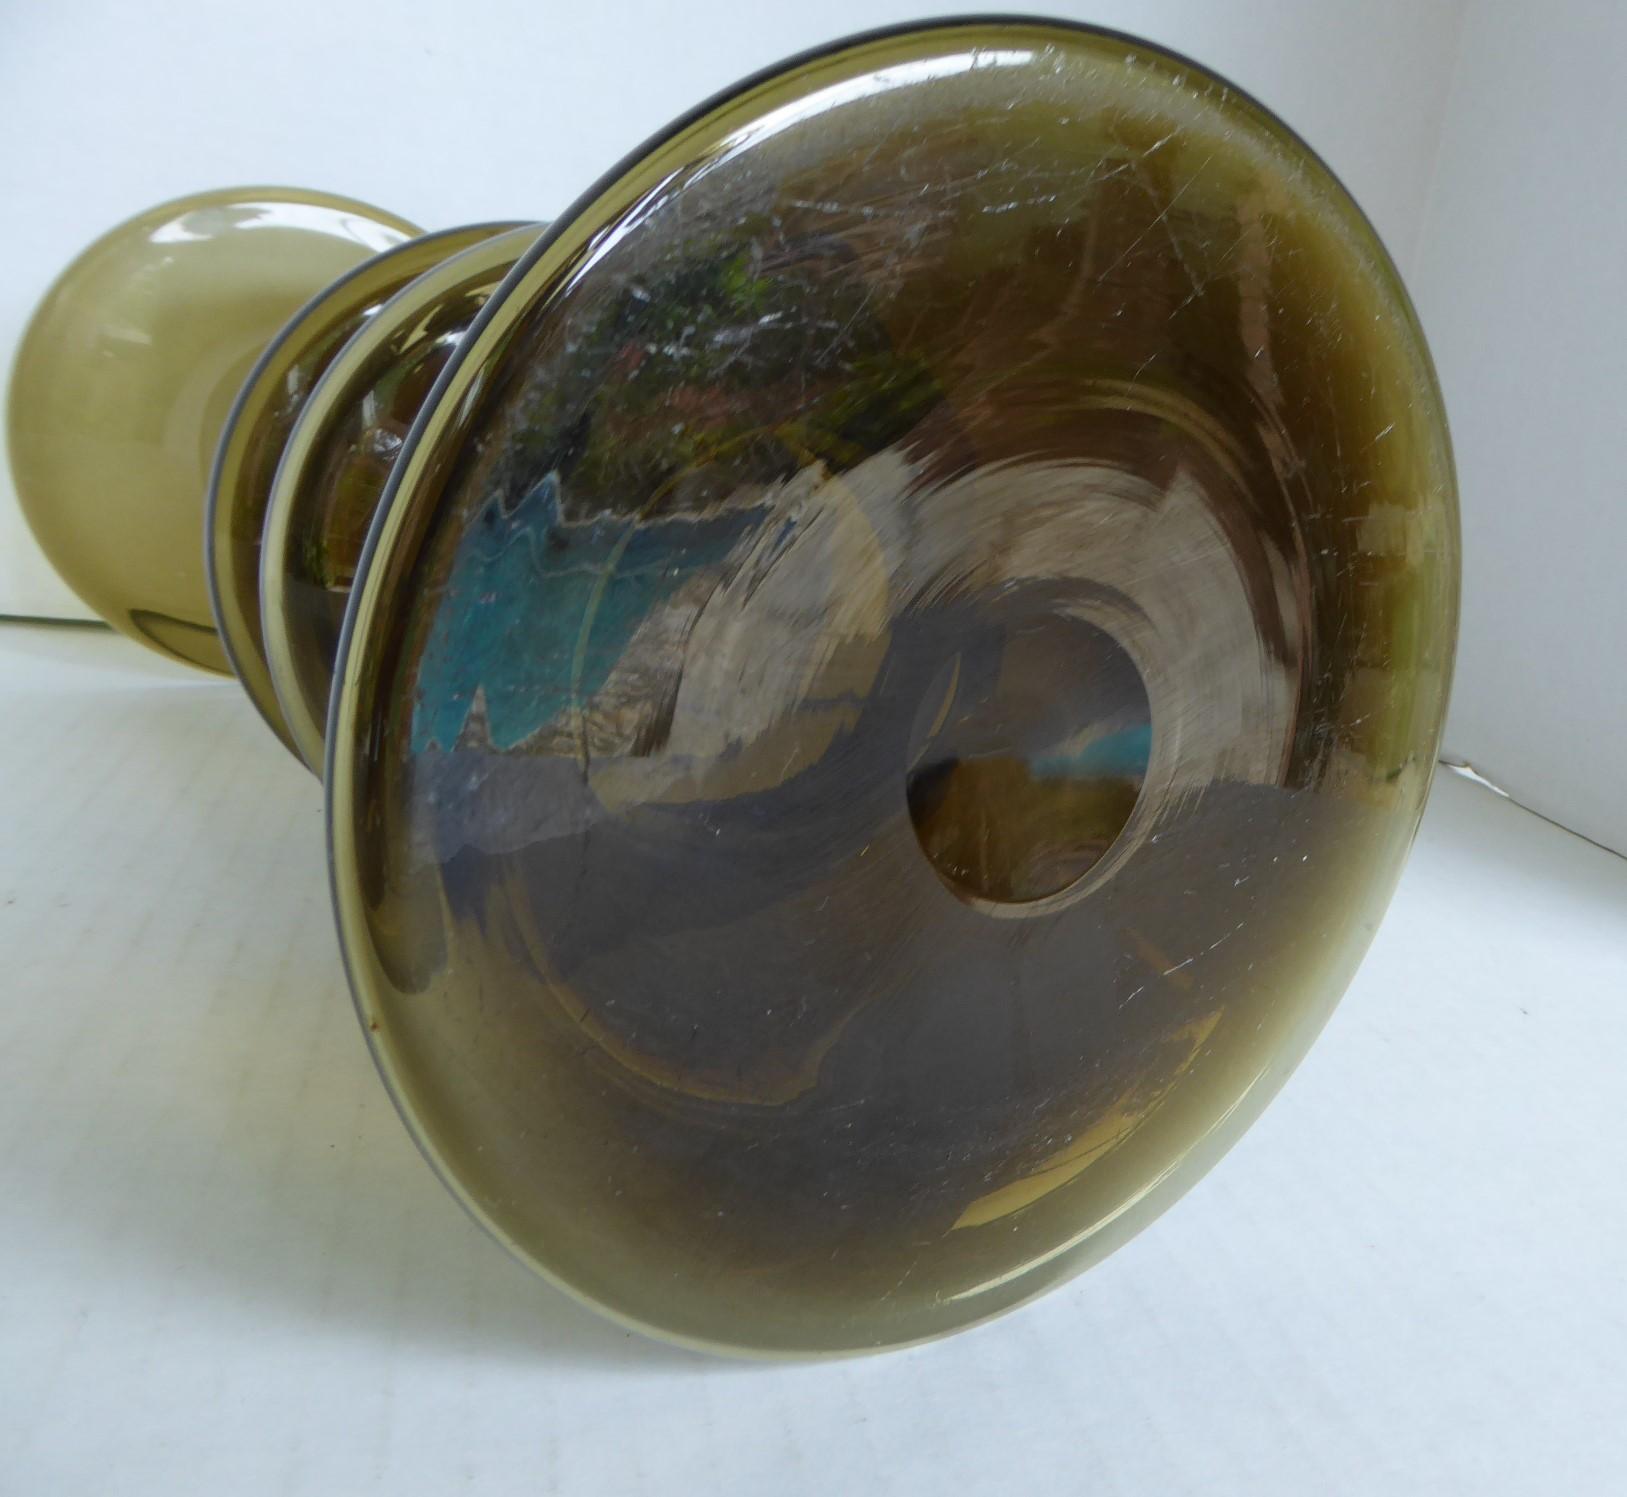 Havanna Series Holmegaard Mid Century Modern Glass Vase Per Lutken 1967 Denmark In Good Condition For Sale In Miami, FL